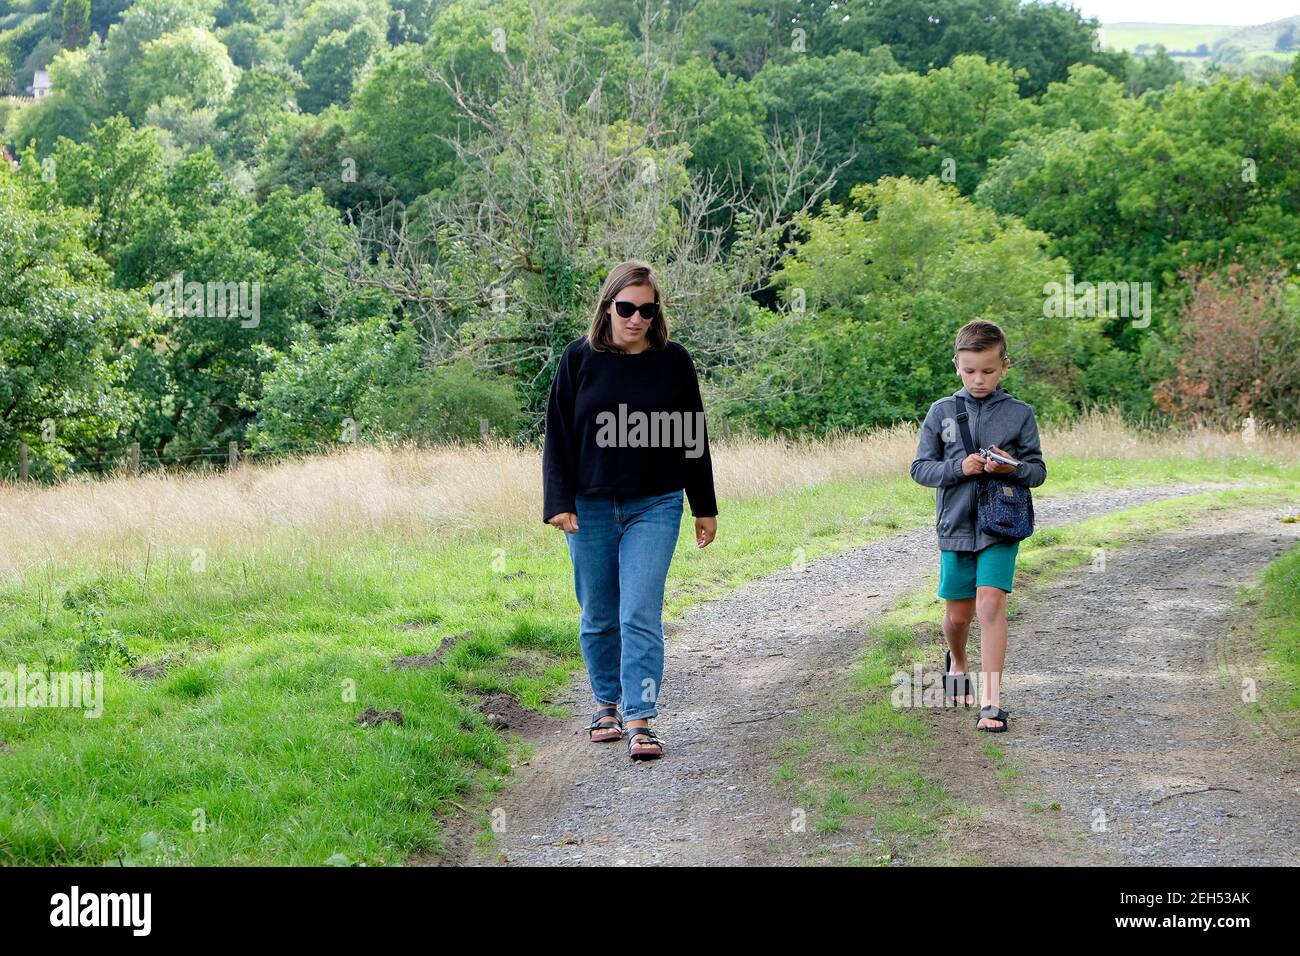 Mère et fils marchent le long d'une piste de campagne Chemin de la voie dans la campagne rurale gallois d'été arbres de Carmarthenshire PAYS DE GALLES ROYAUME-UNI KATHY DEWITT Banque D'Images